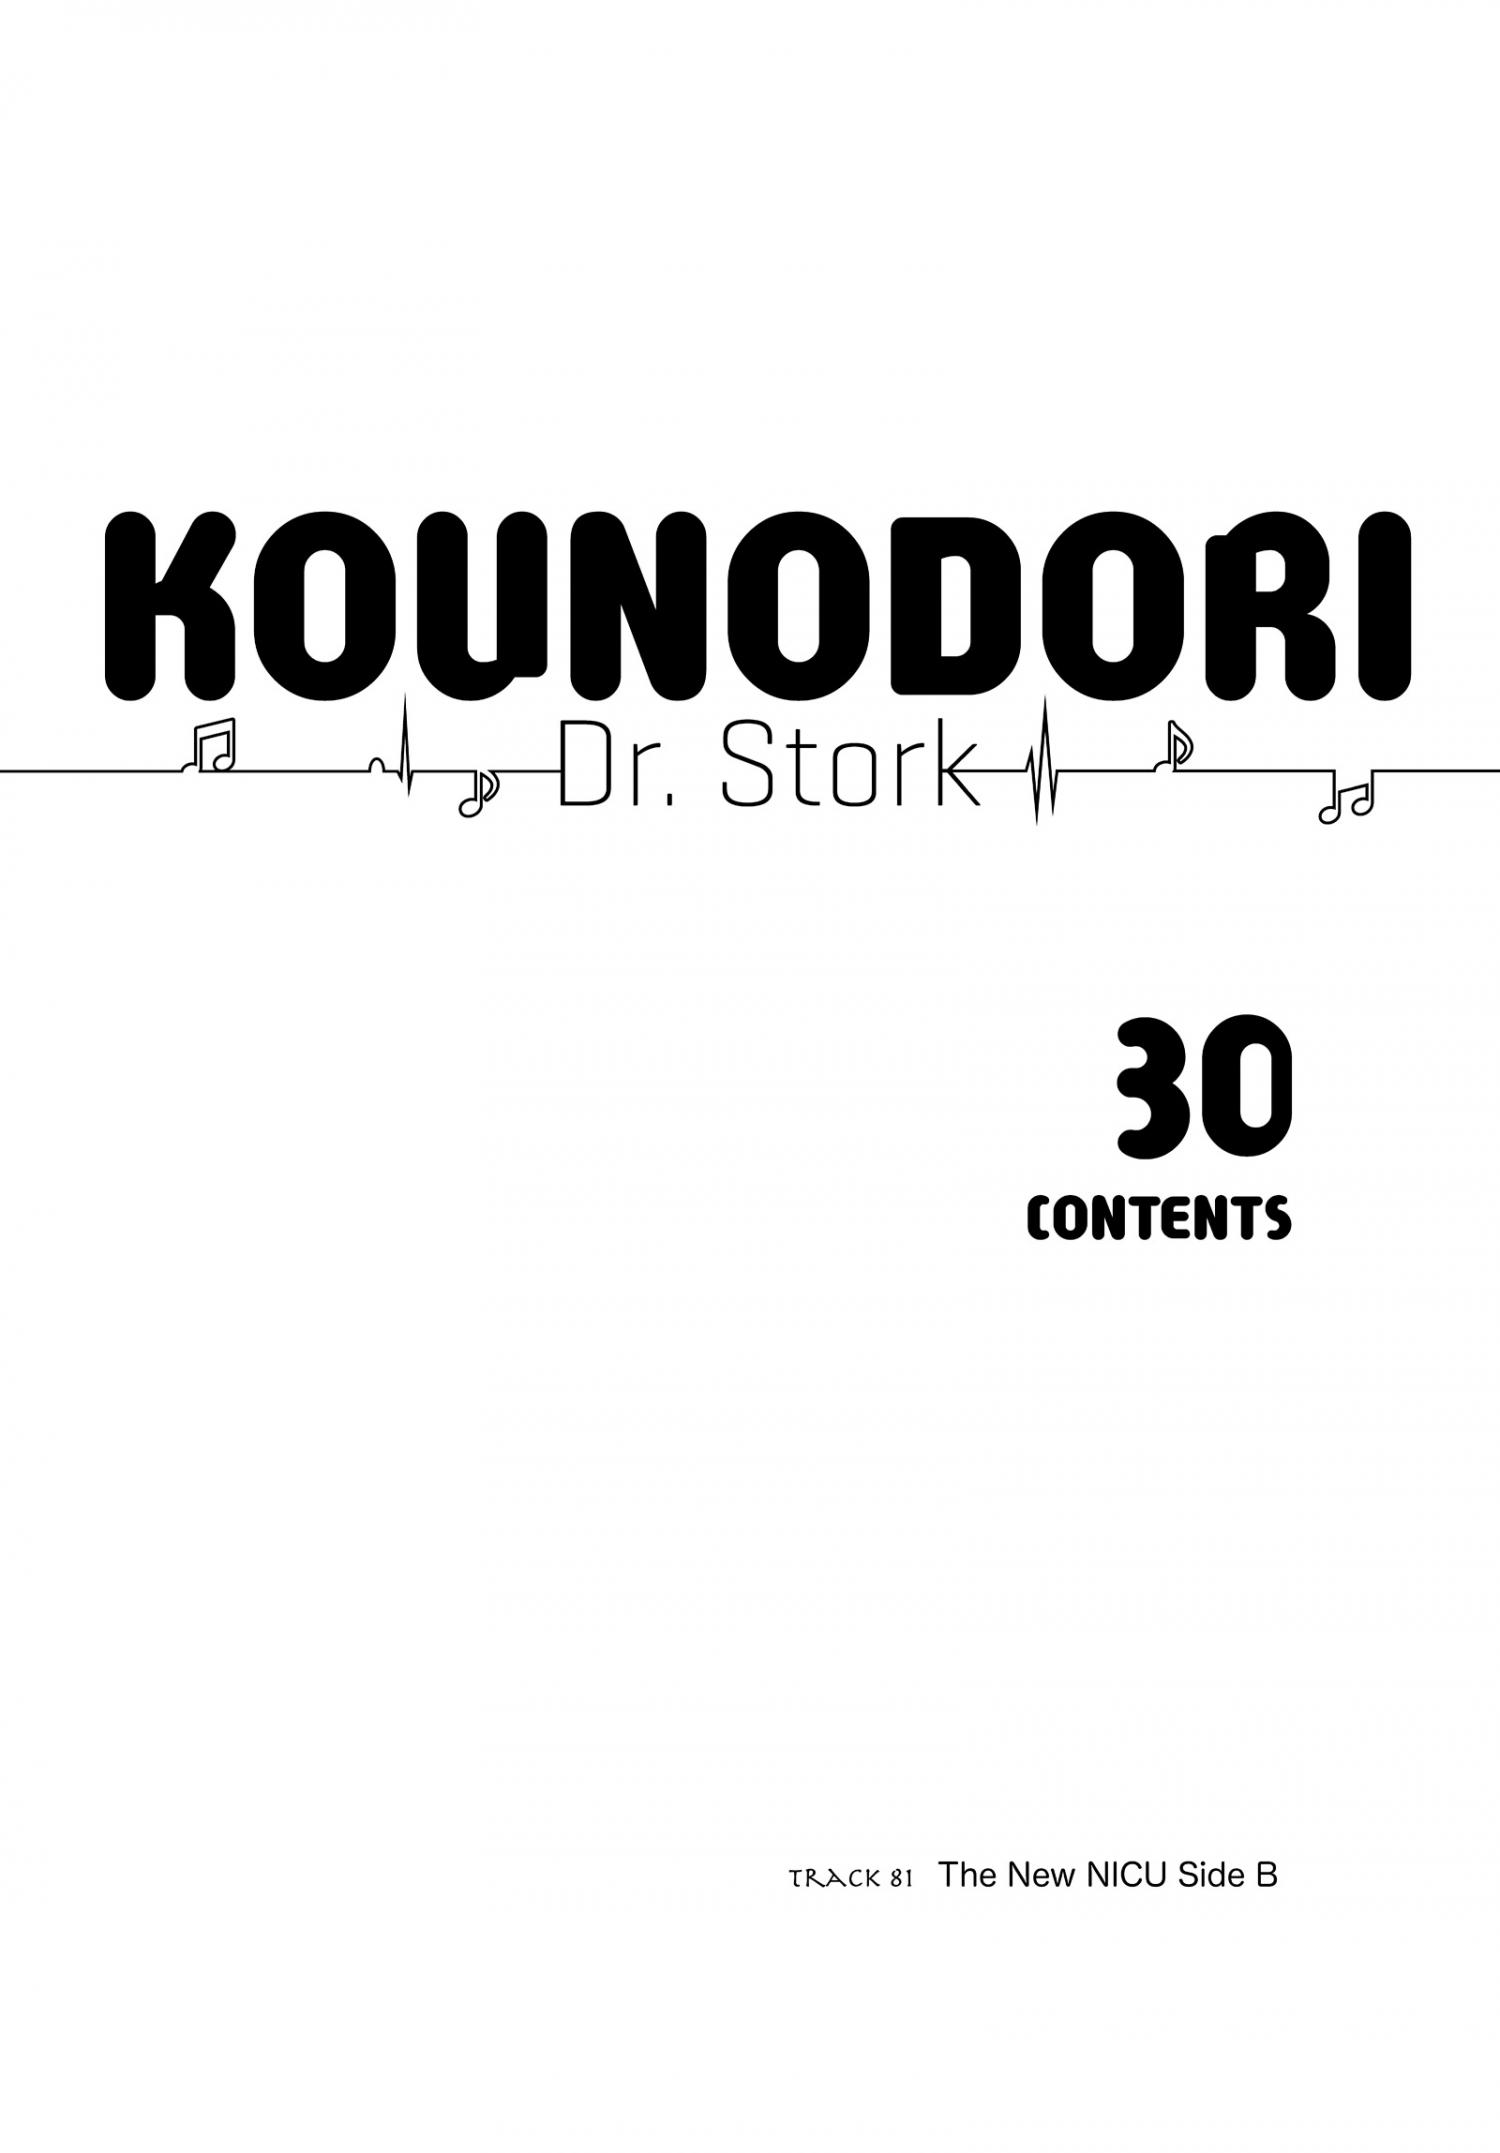 Kounodori - The Stork - episode 199 - 2